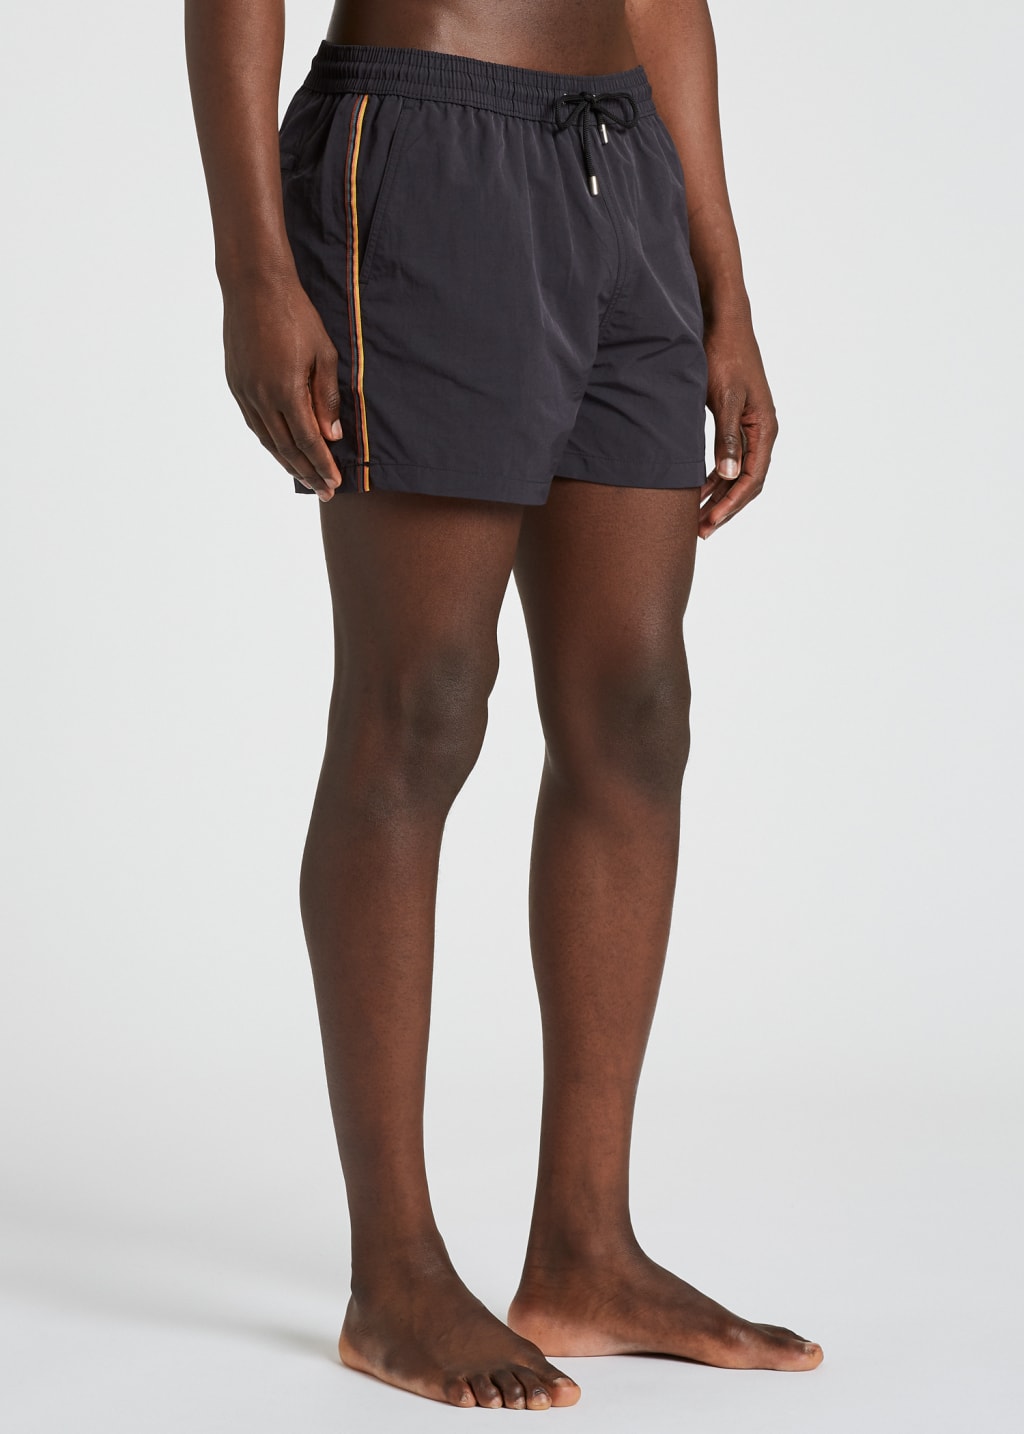 Model View - Black Swim Shorts With 'Artist Stripe' Trim Paul Smith